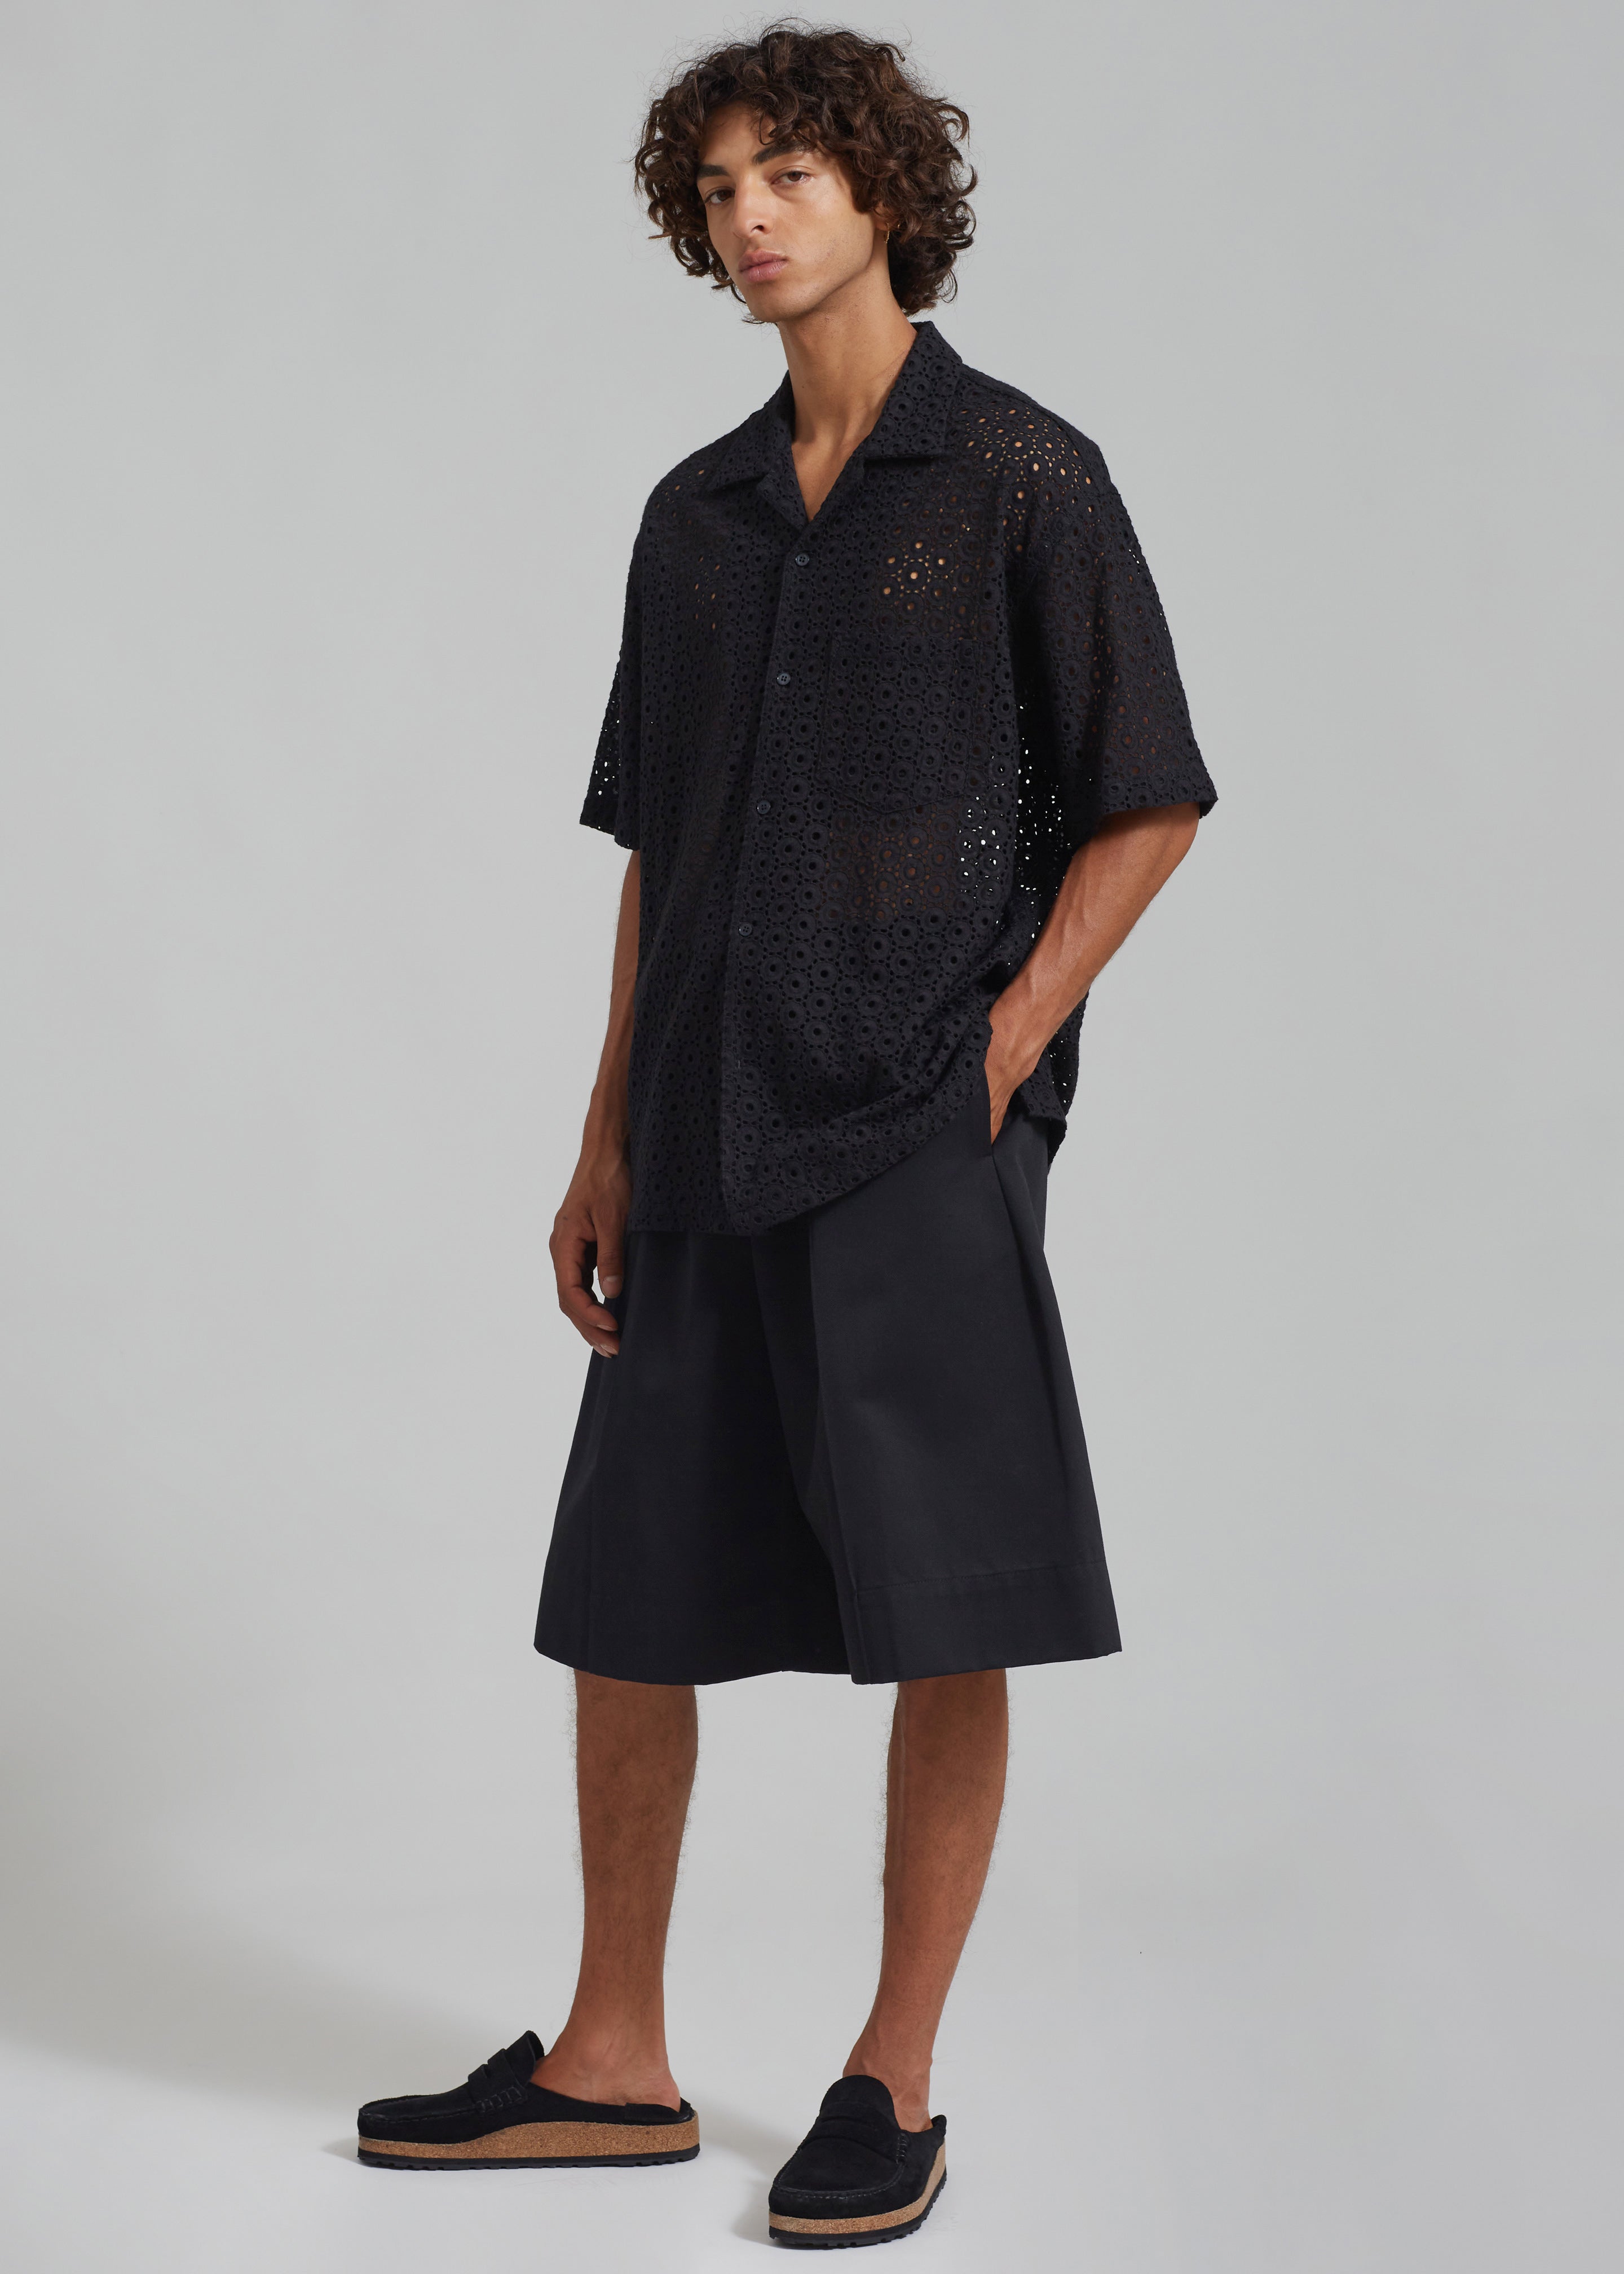 Adan Bermuda Shorts - Black - 7